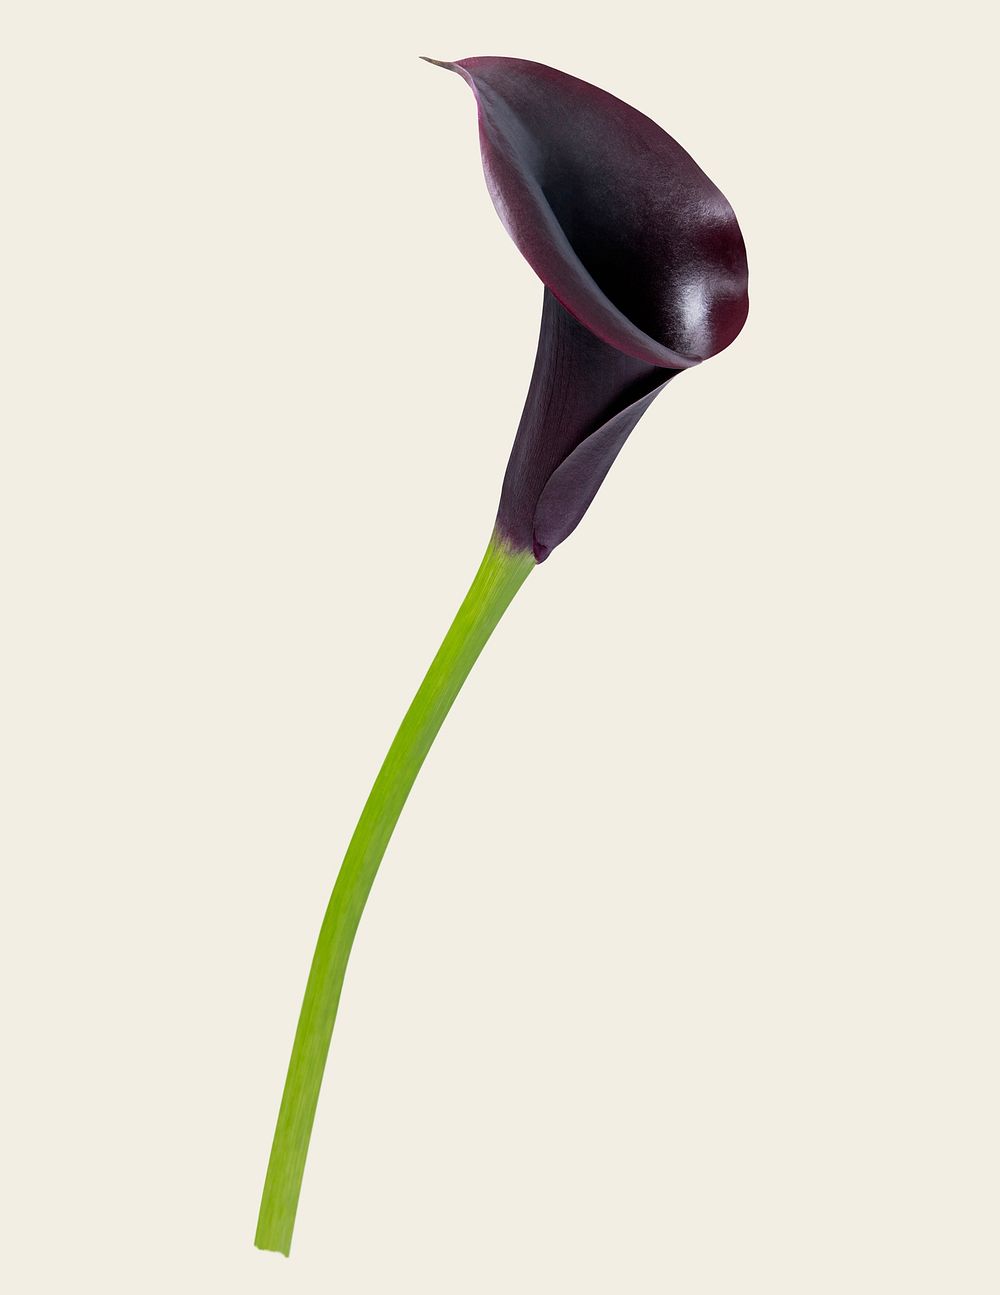 Purple calla lily, collage element psd